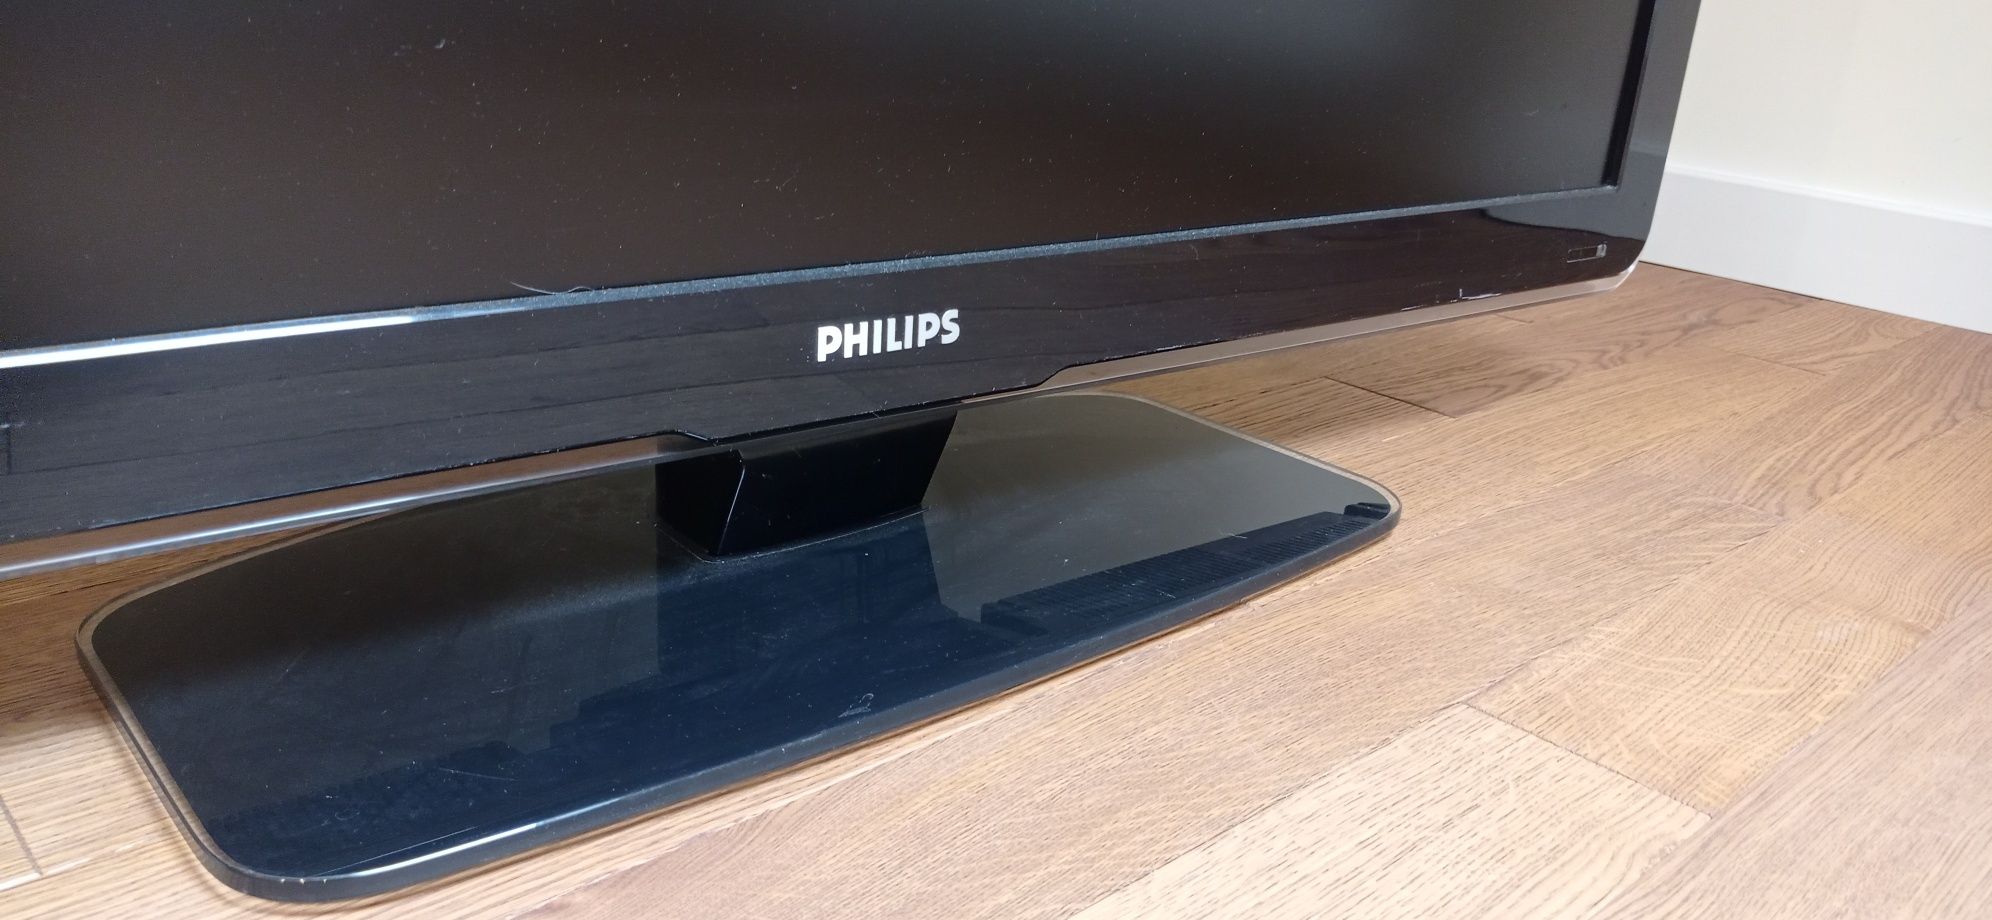 Телевизор Philips 42